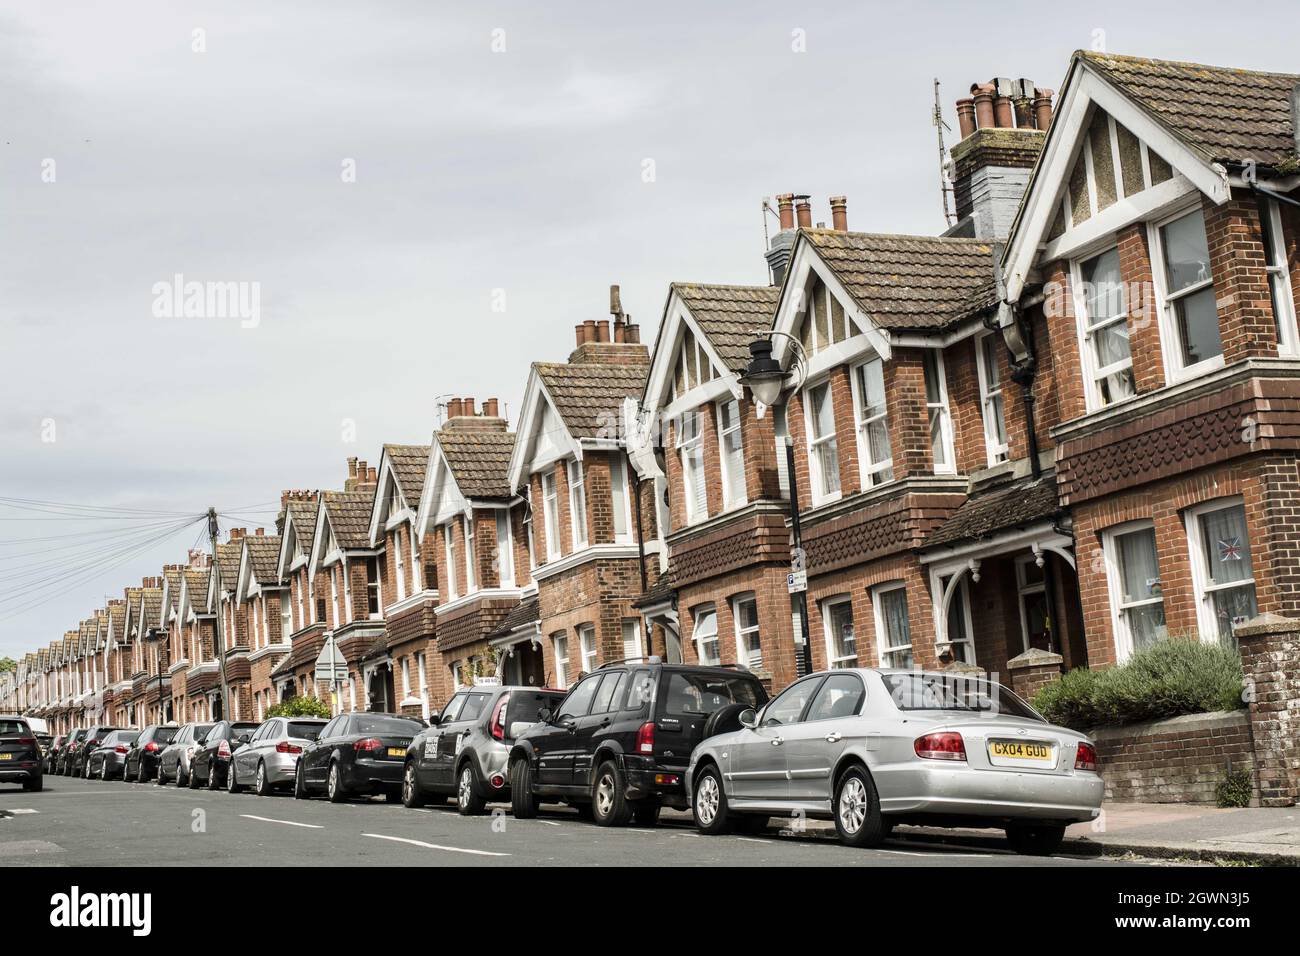 Strada con case terrazzate, automobili nella parte anteriore, Inghilterra Foto Stock